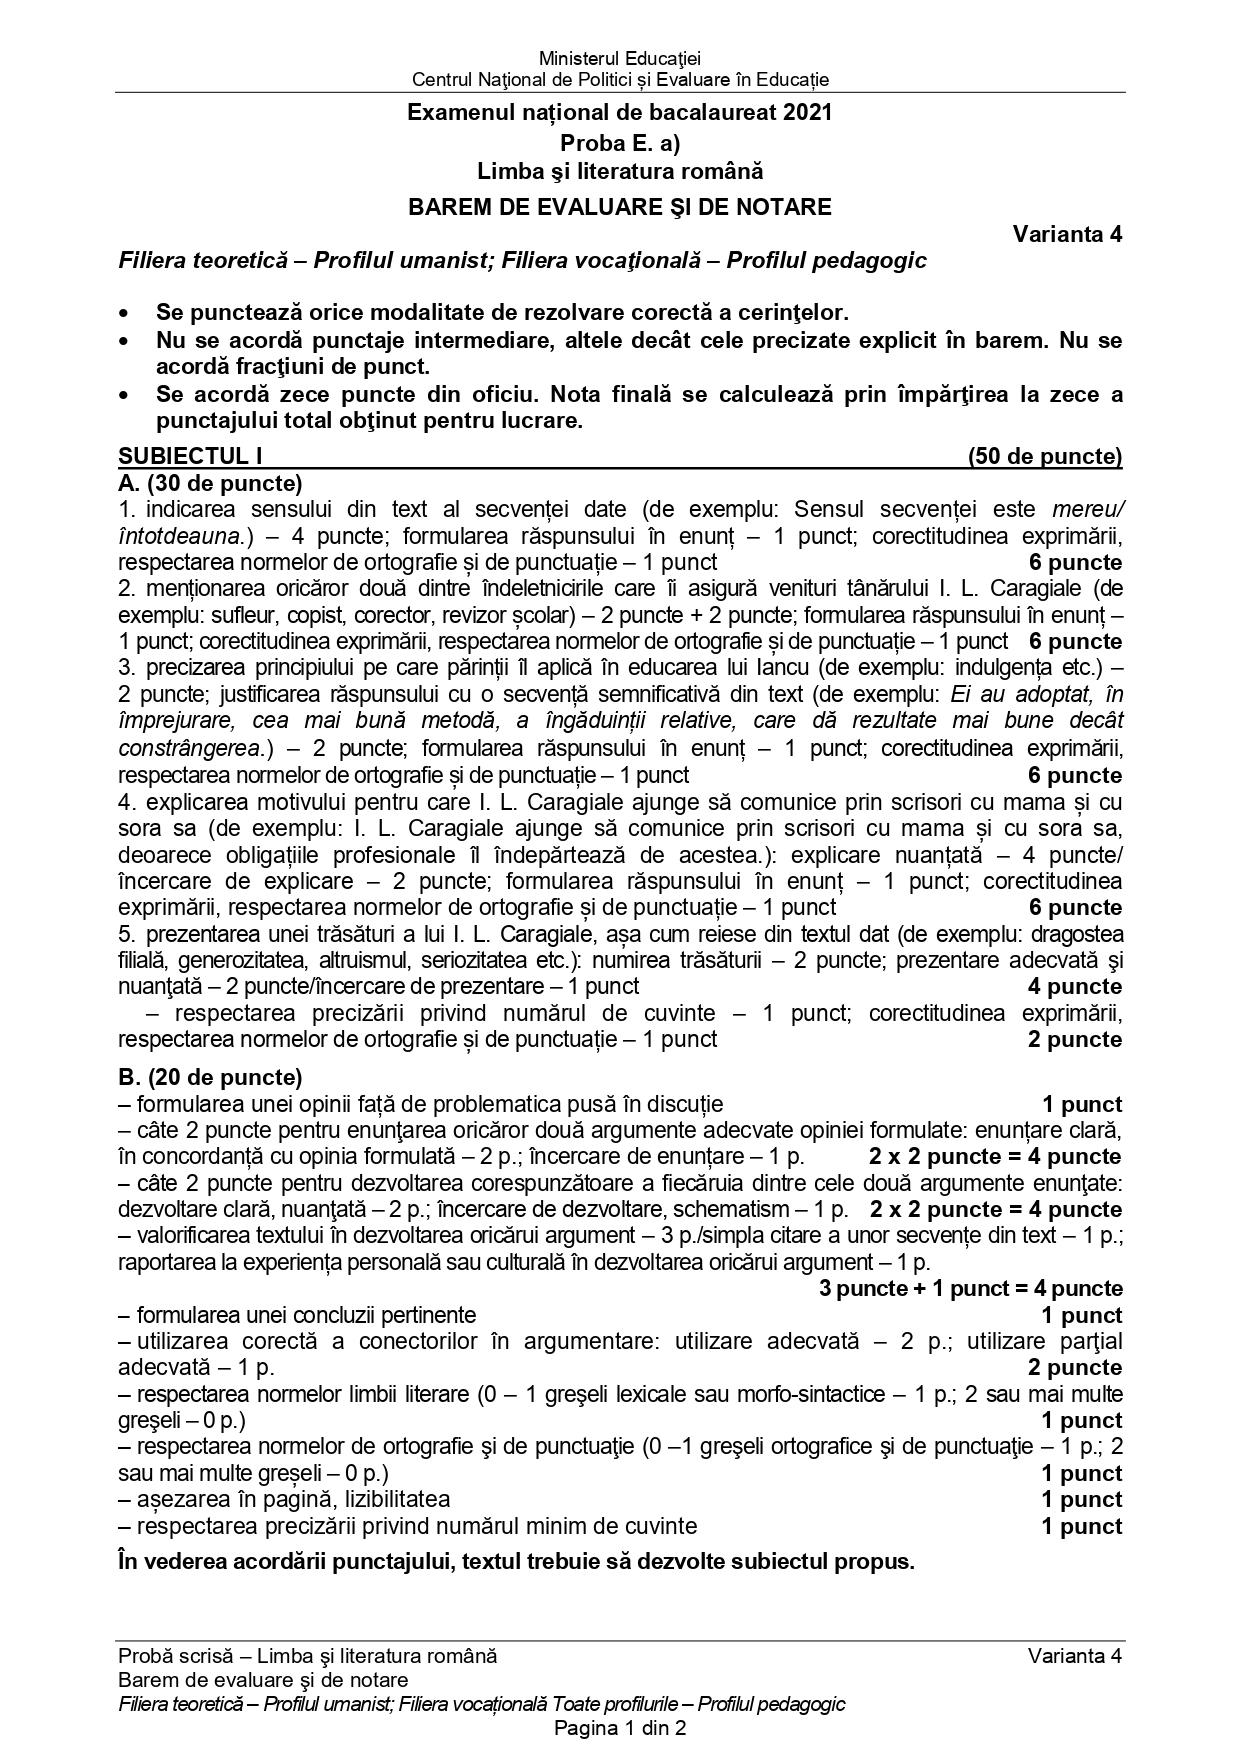 Barem rezolvare limba română BAC 2021 profil uman